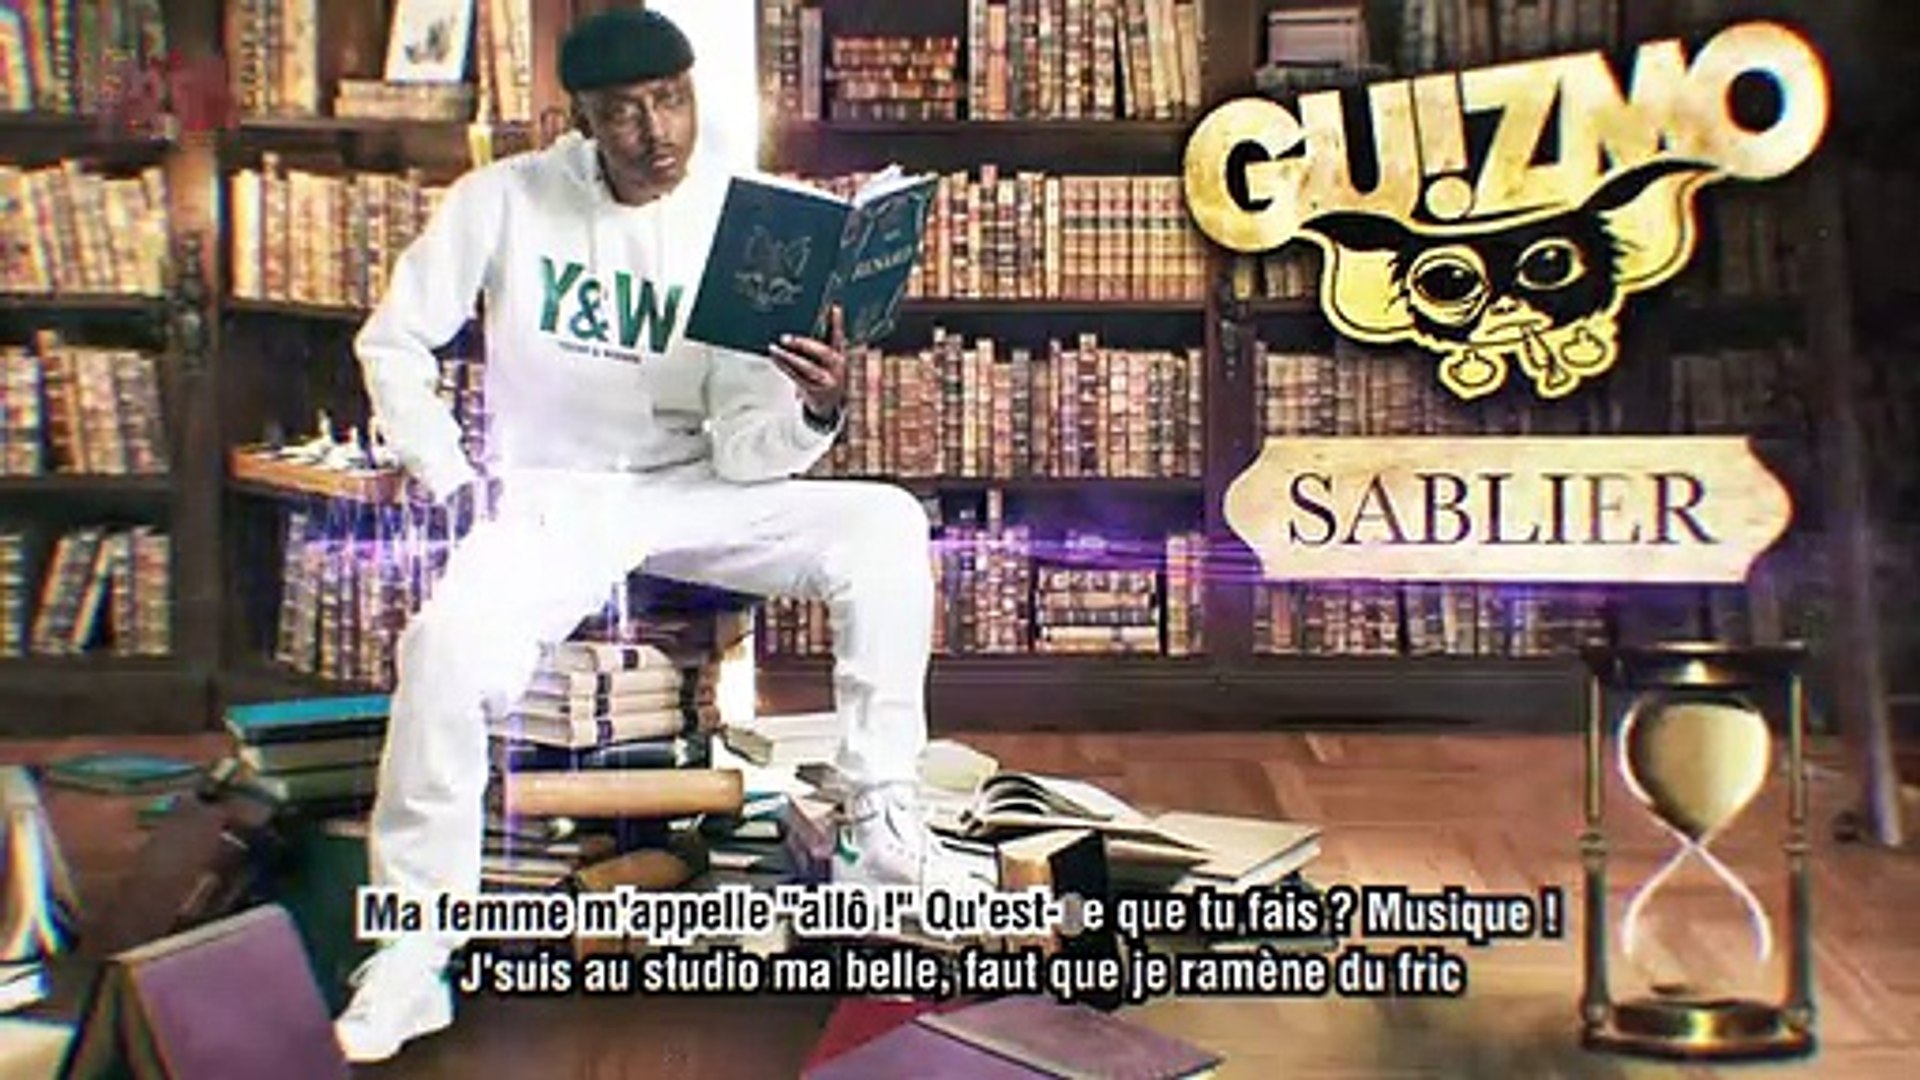 Guizmo Sablier Lyrics Video Video Dailymotion « sablier », extrait de « r.i.p.r.o vol.1 », sortie le 1er juin. guizmo sablier lyrics video